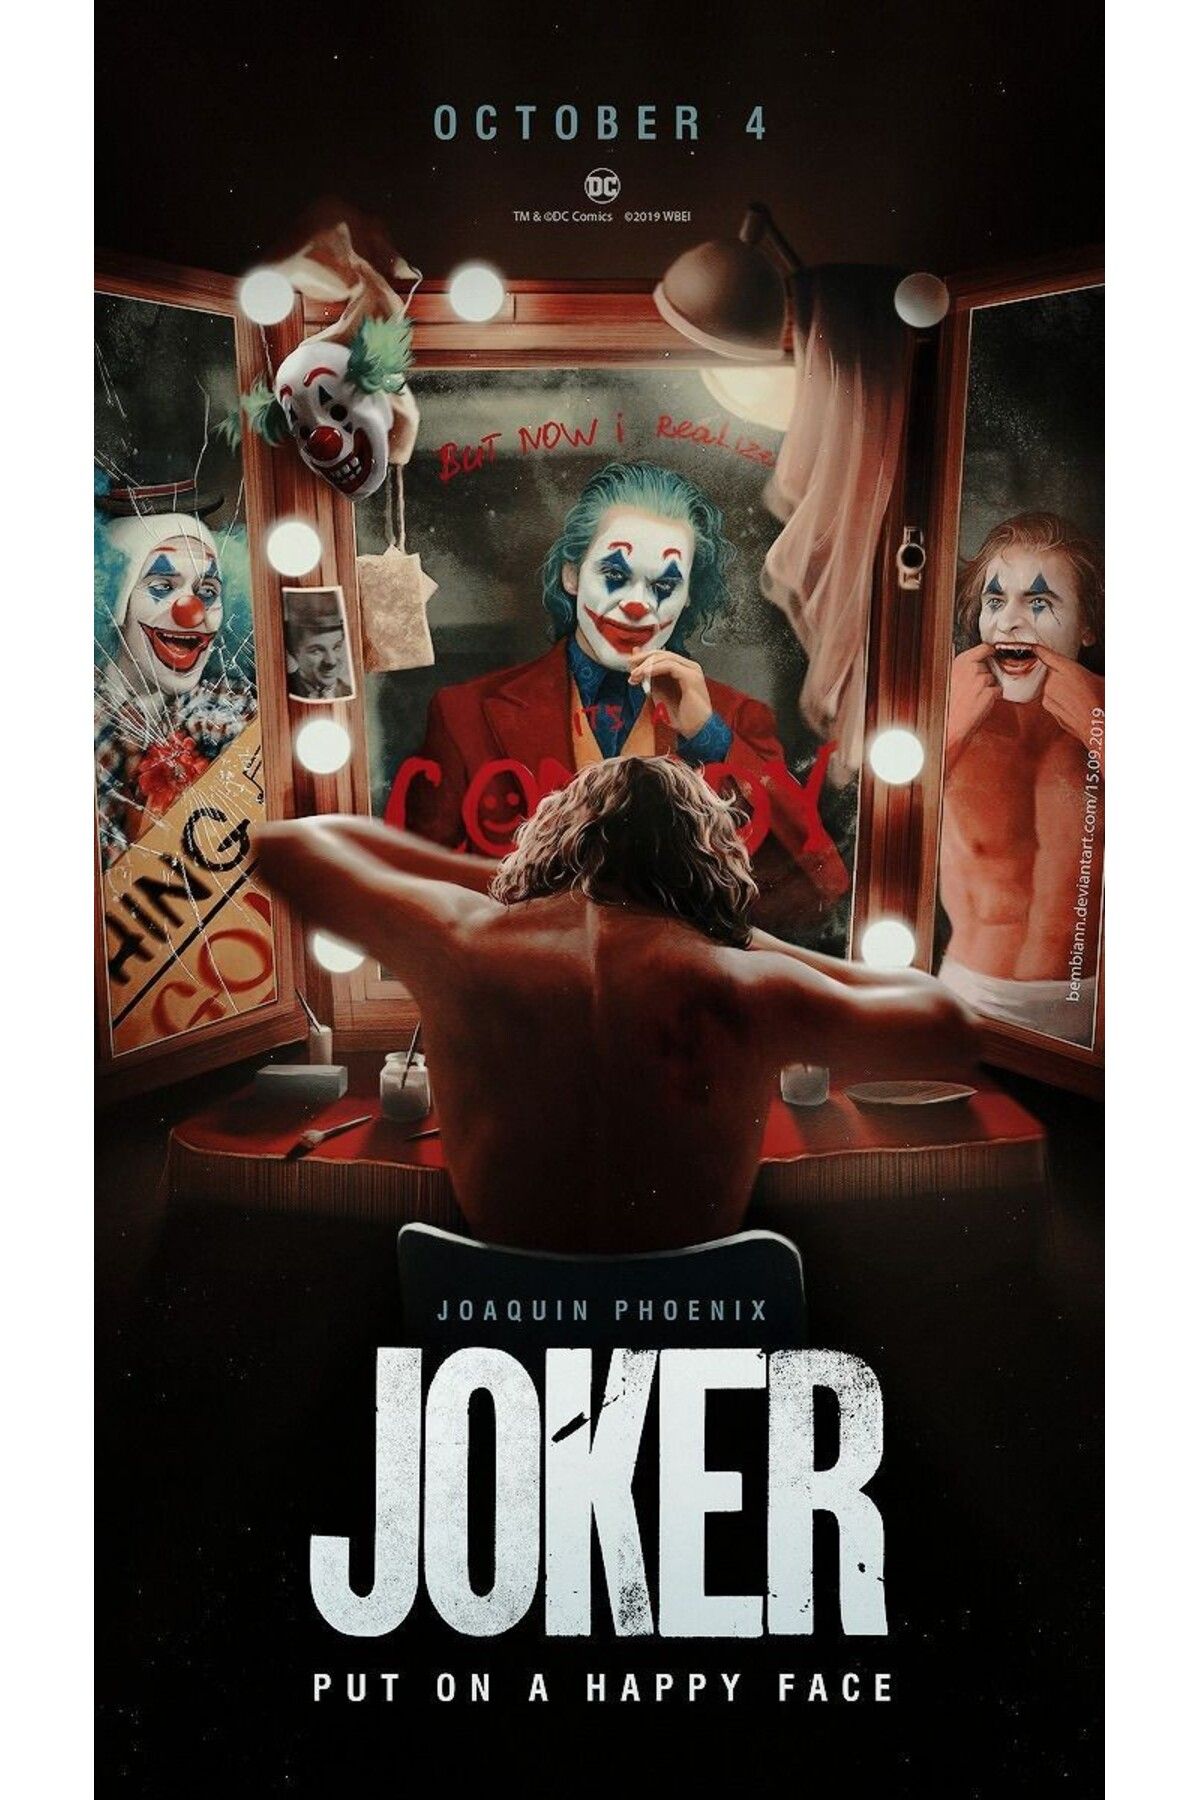 512 STORE Joker Film Afis Poster 30x42 Cercevesiz